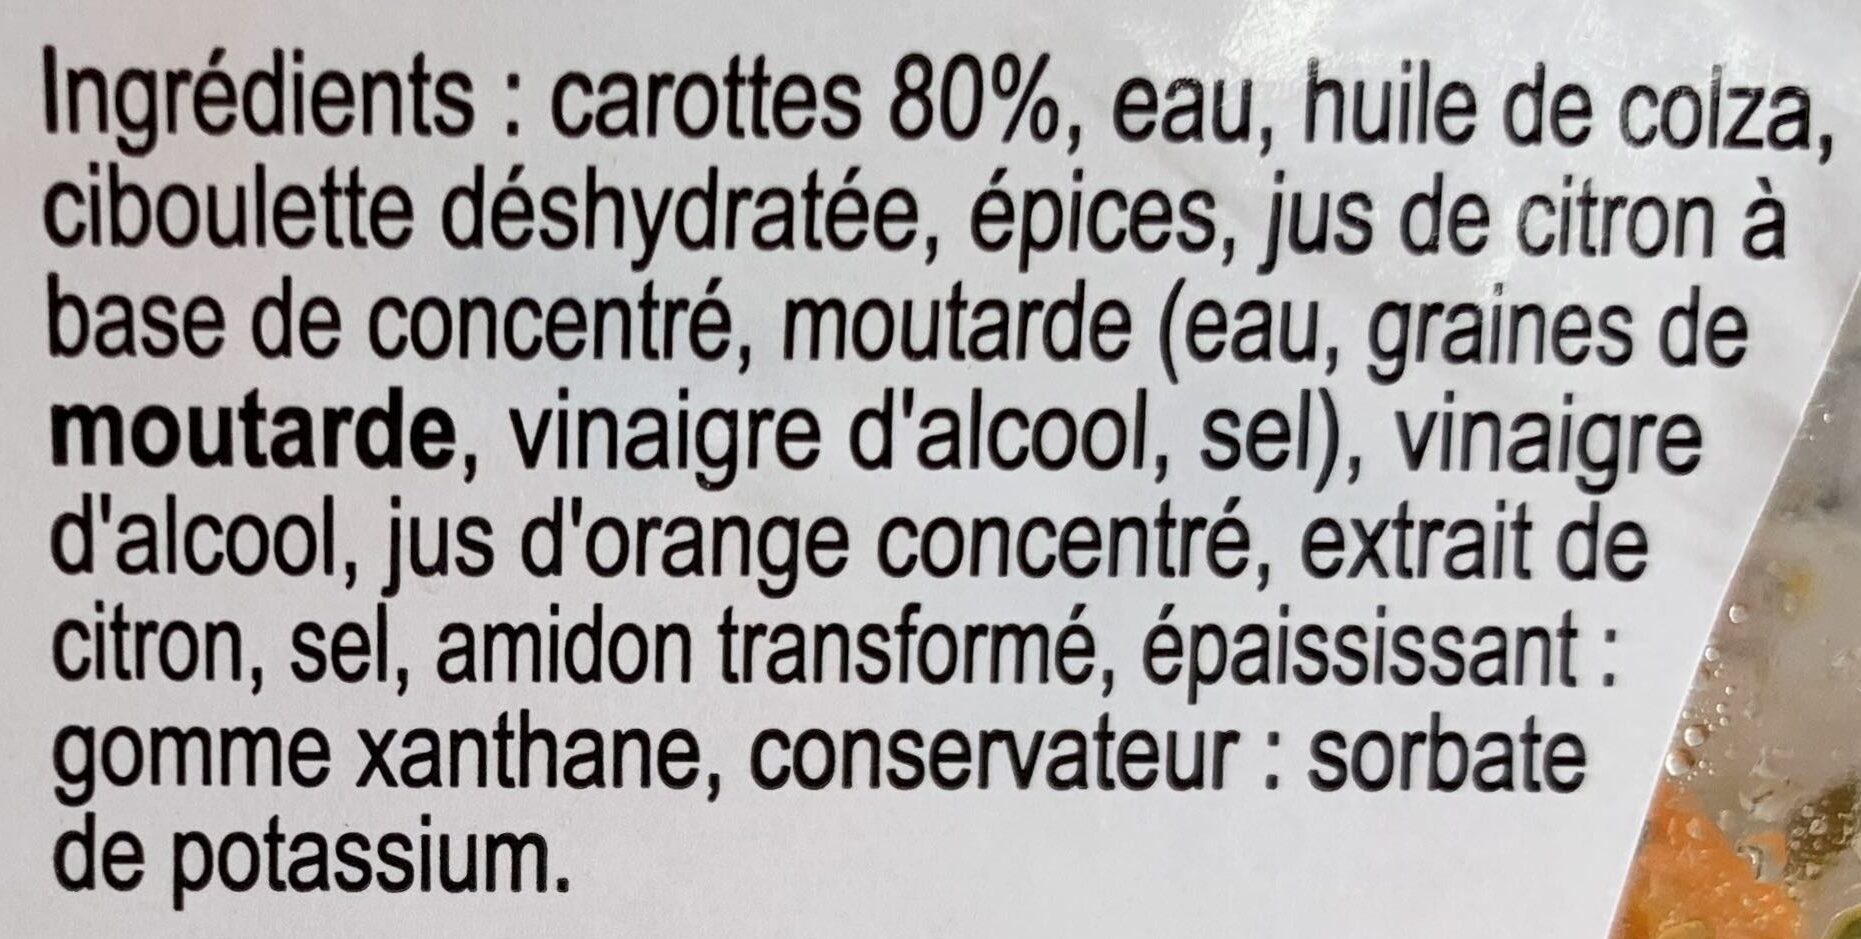 Mes Carottes râpées à la Ciboulette - Ingredients - fr